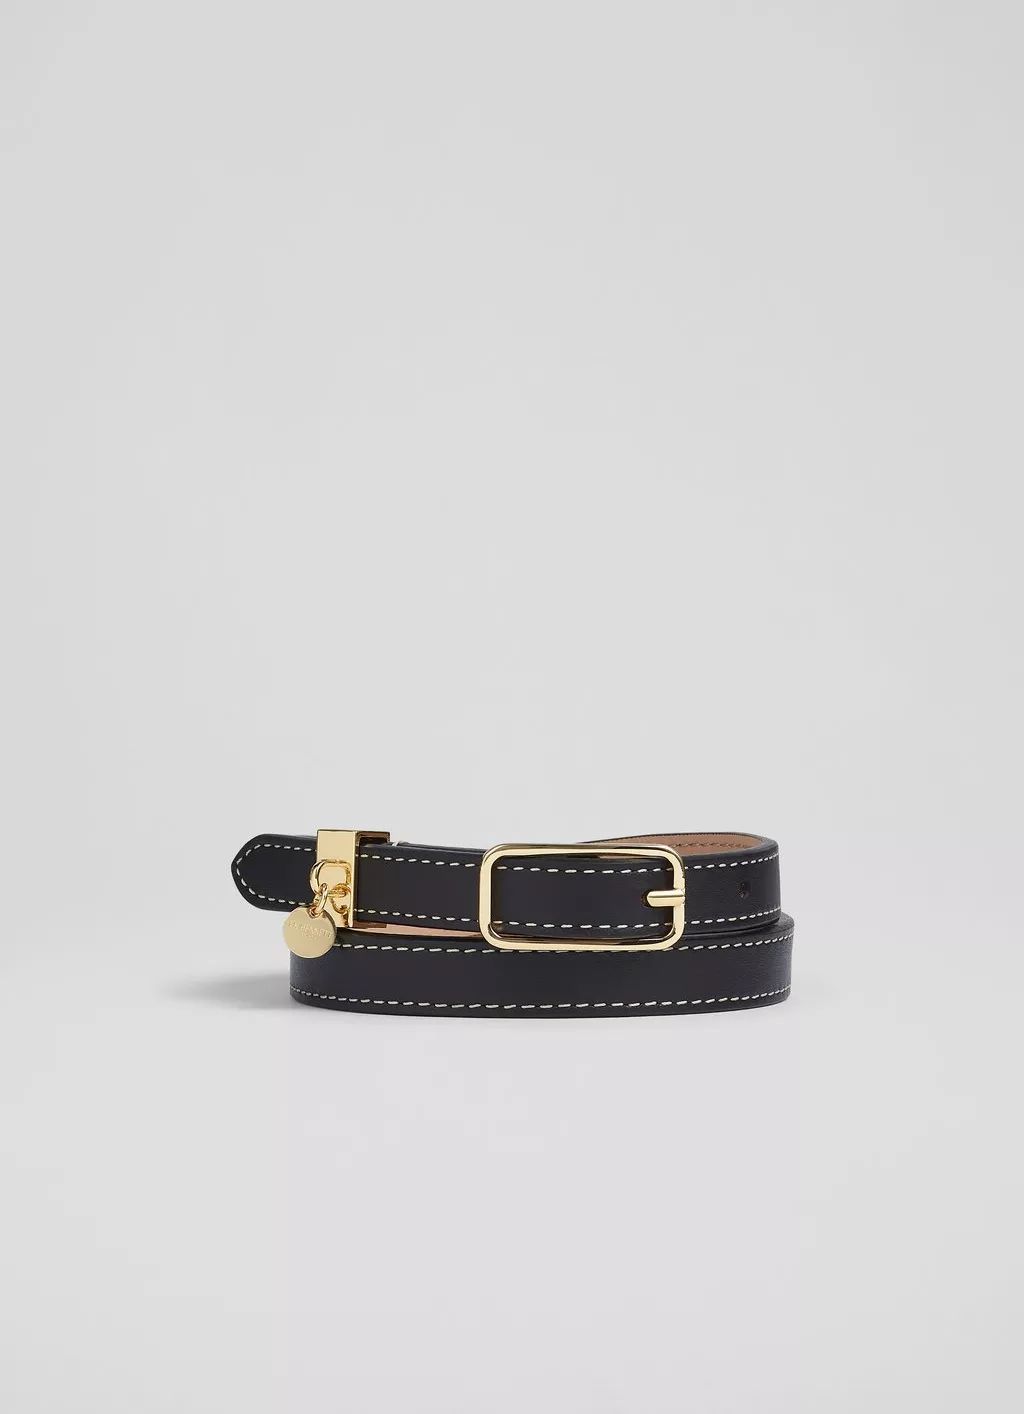 Molly Black Leather Skinny Belt | L.K. Bennett (UK)